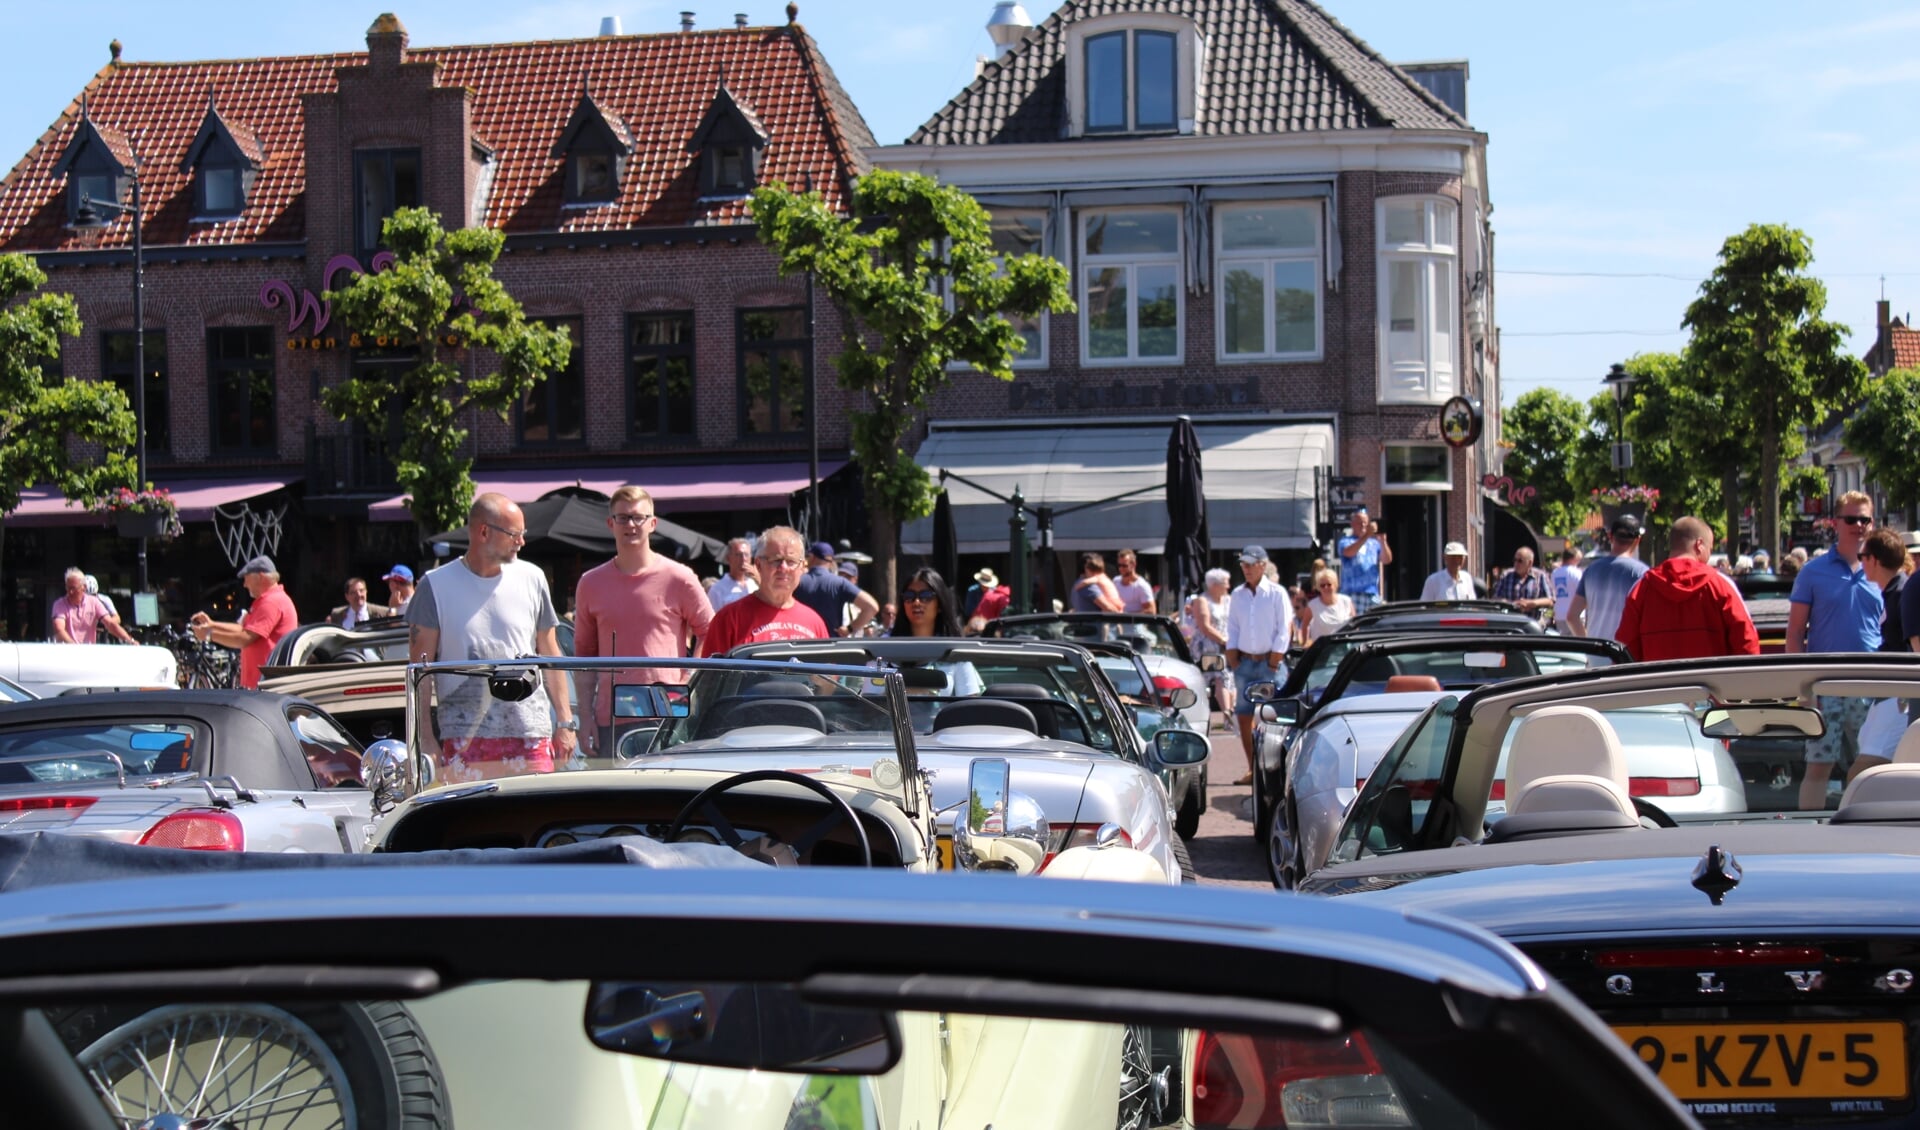 De bijzondere auto's trekken elk jaar veel bekijks op de Markt in Schagen.